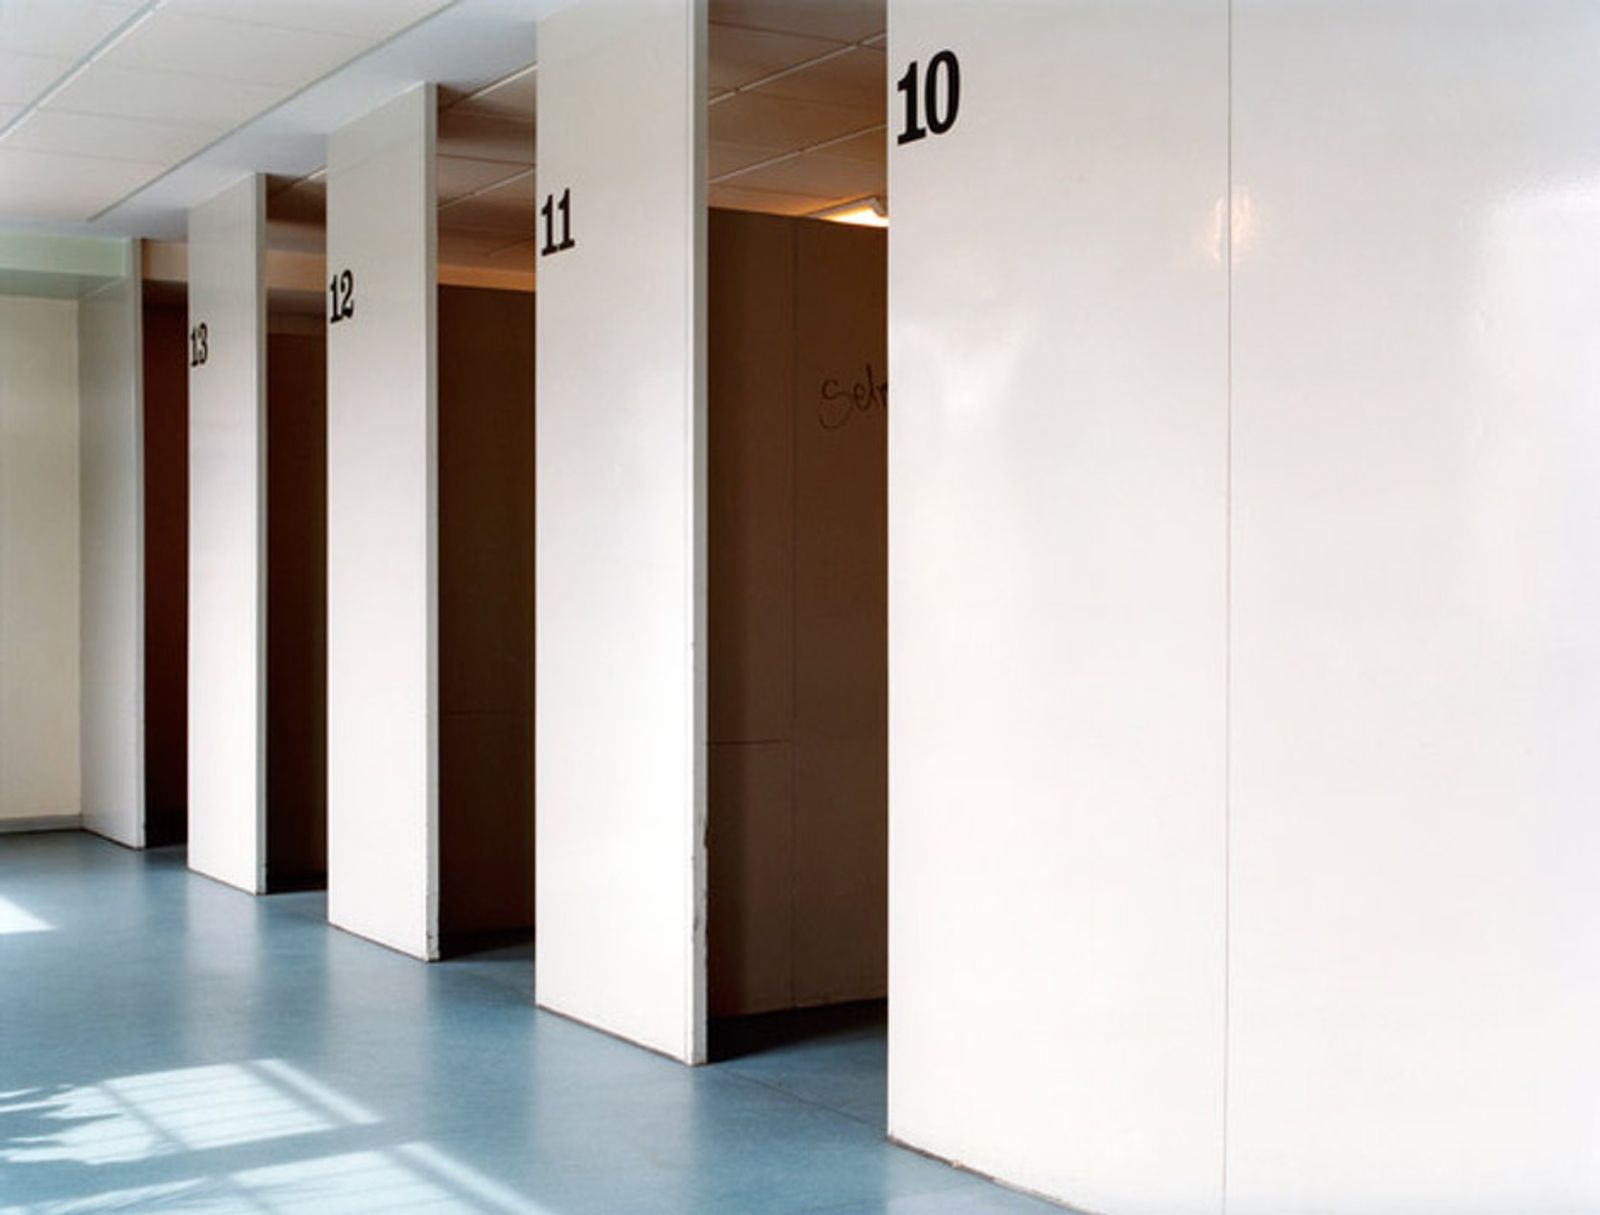 © Sibylle Fendt - Visitors' Room in Deportation Area, Berlin-Köpenick, Germany